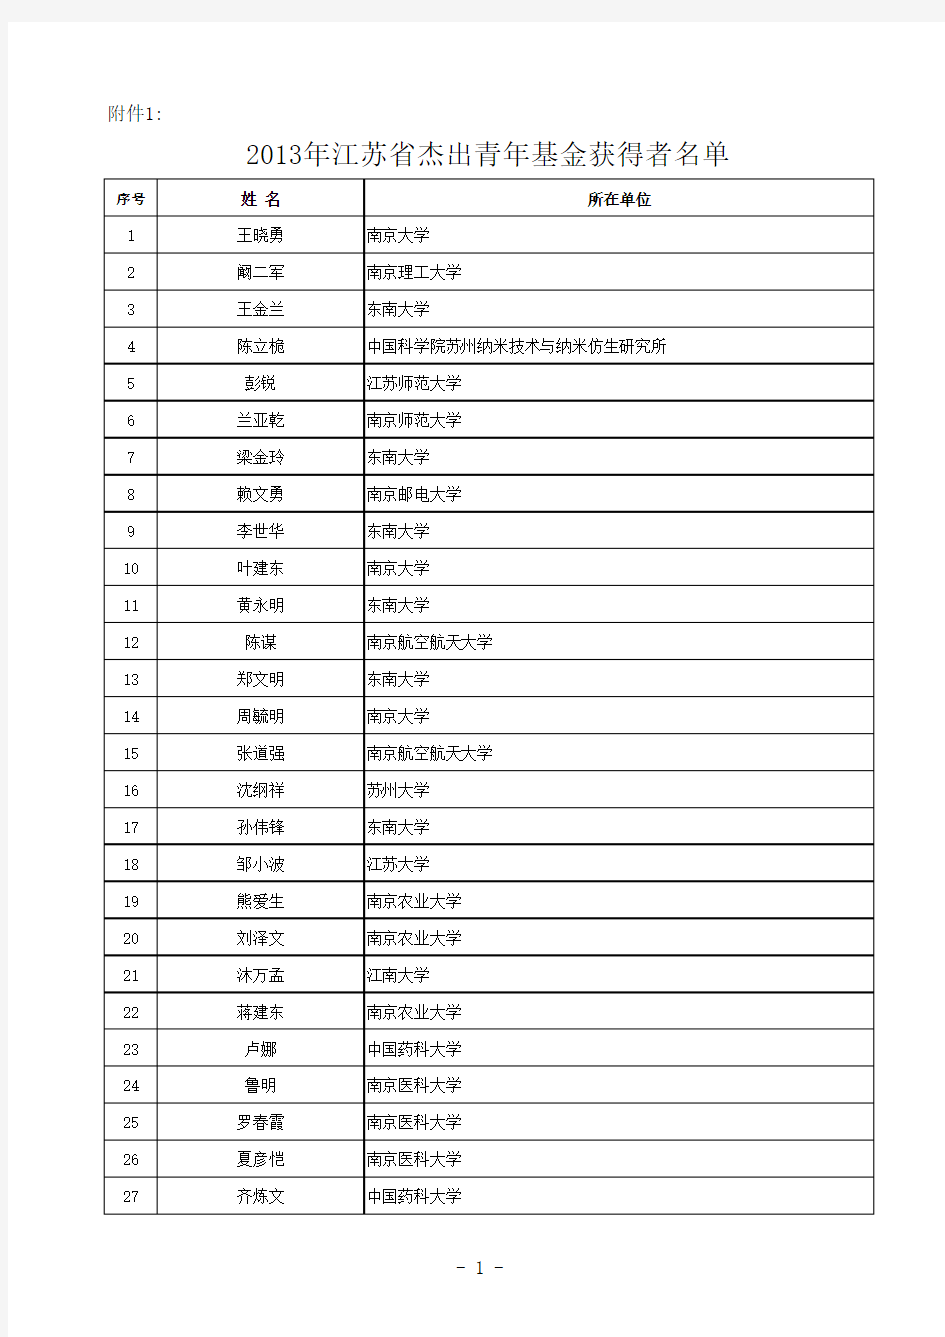 江苏省自然科学基金杰出青年基金获得者名单